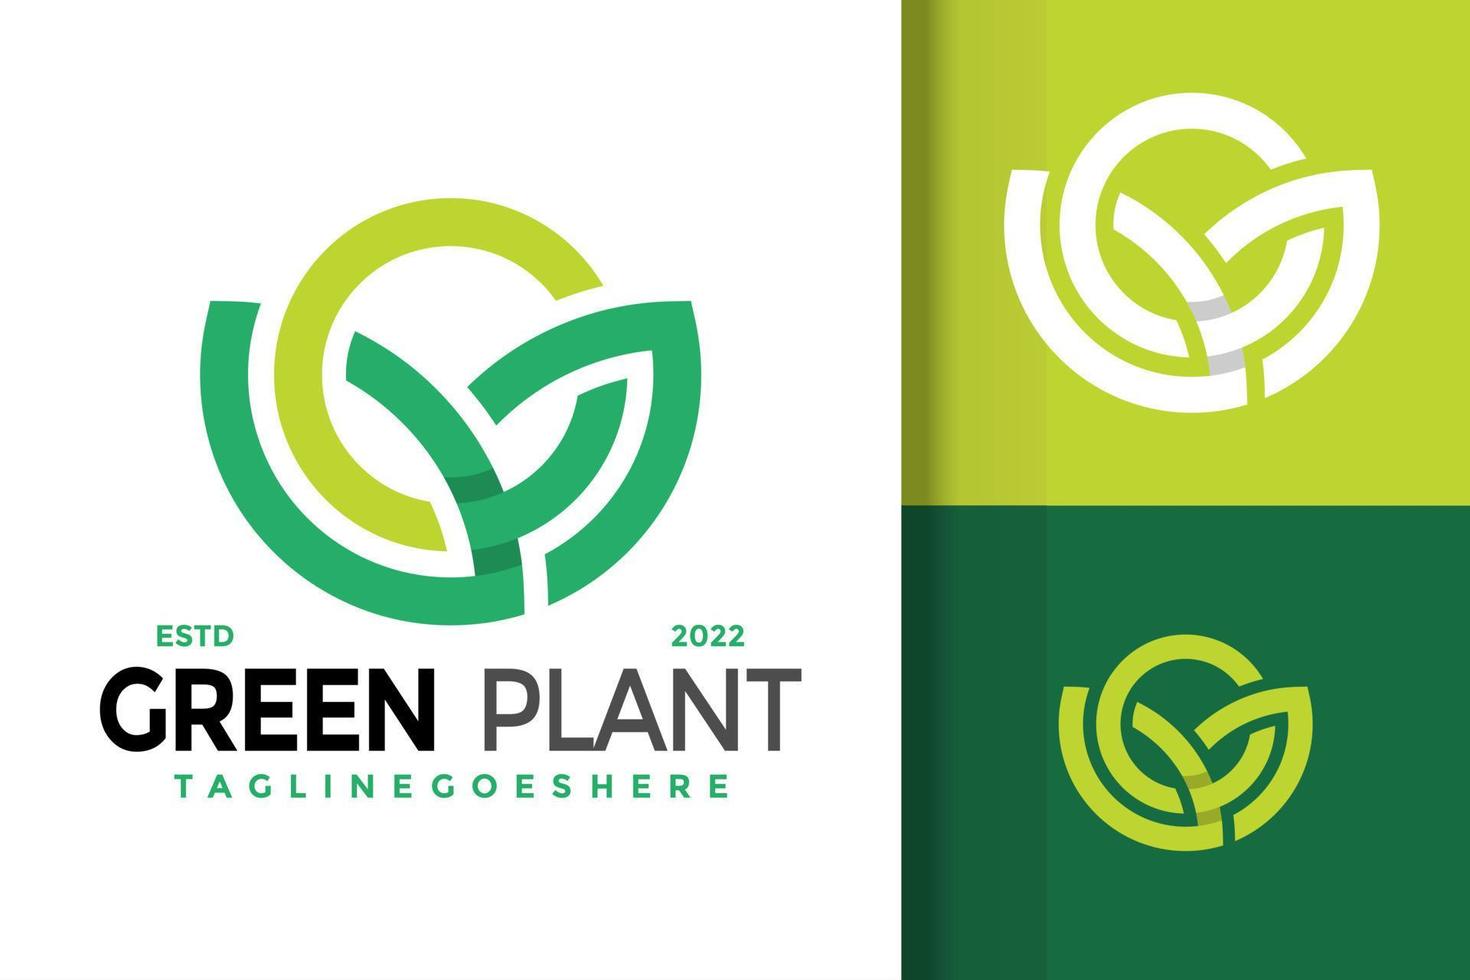 création de logo de plante verte nature, vecteur de logos d'identité de marque, logo moderne, modèle d'illustration vectorielle de dessins de logo